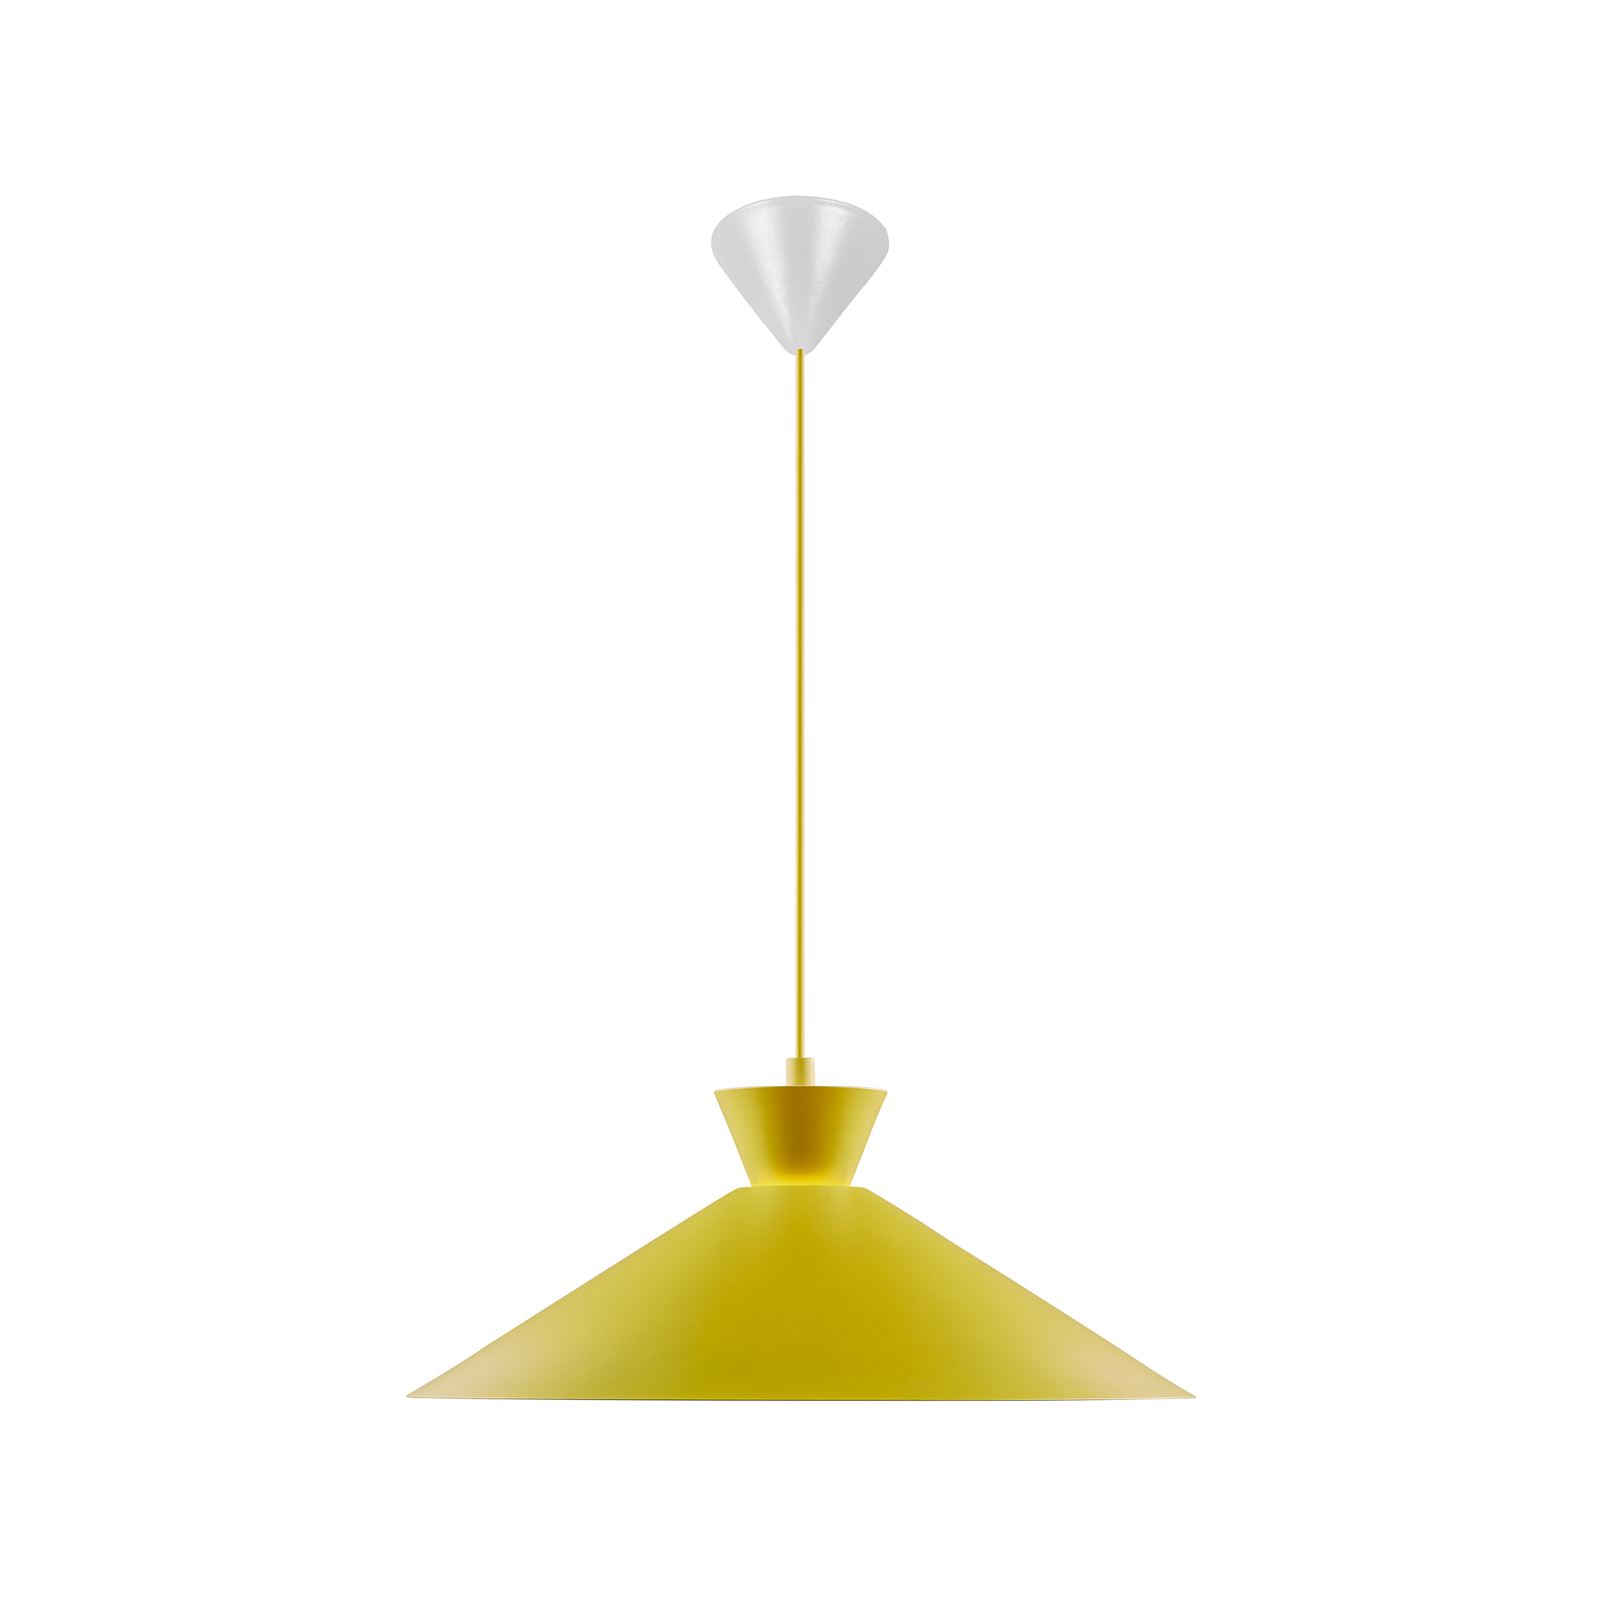 Tárcsás függőlámpa fém ernyővel, sárga, Ø 45 cm